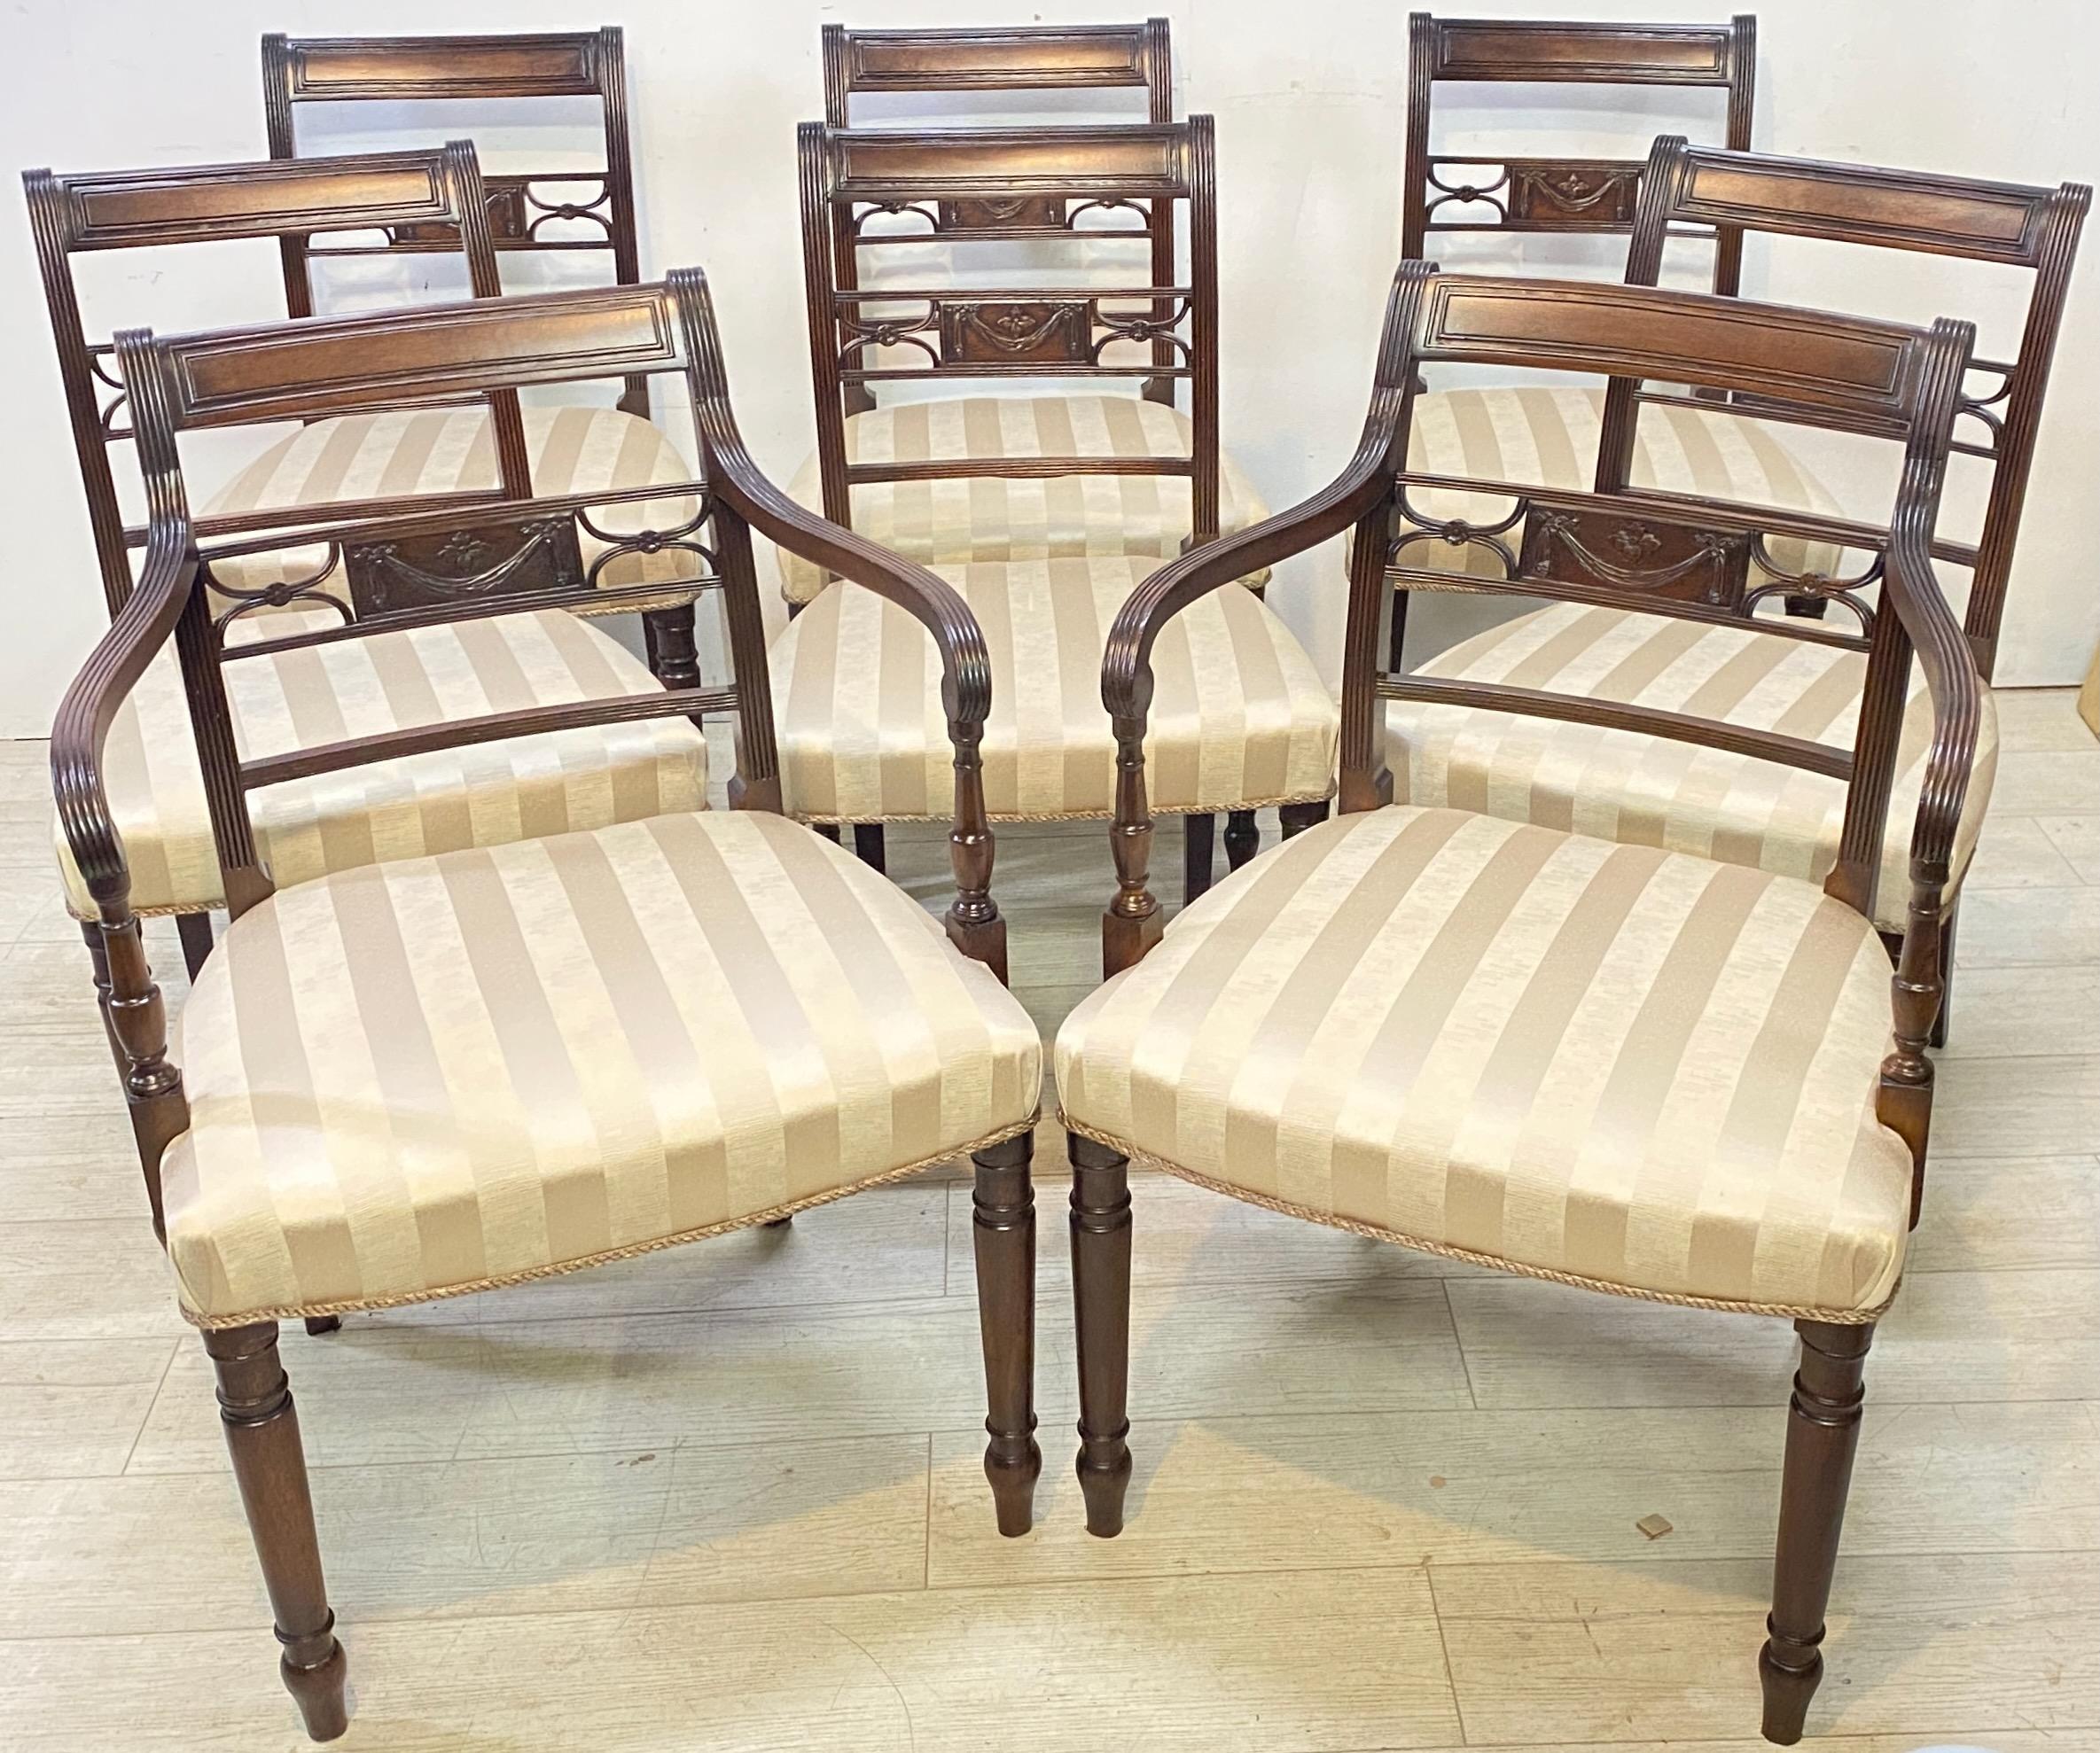 Ein klassischer Satz von acht Mahagonistühlen aus dem frühen 19. Jahrhundert aus der Zeit von George III. in ausgezeichnetem Zustand. Bestehend aus zwei Sesseln und sechs Beistellstühlen.
Kürzlich neu gepolstert und aufgefrischt Originallackierung.